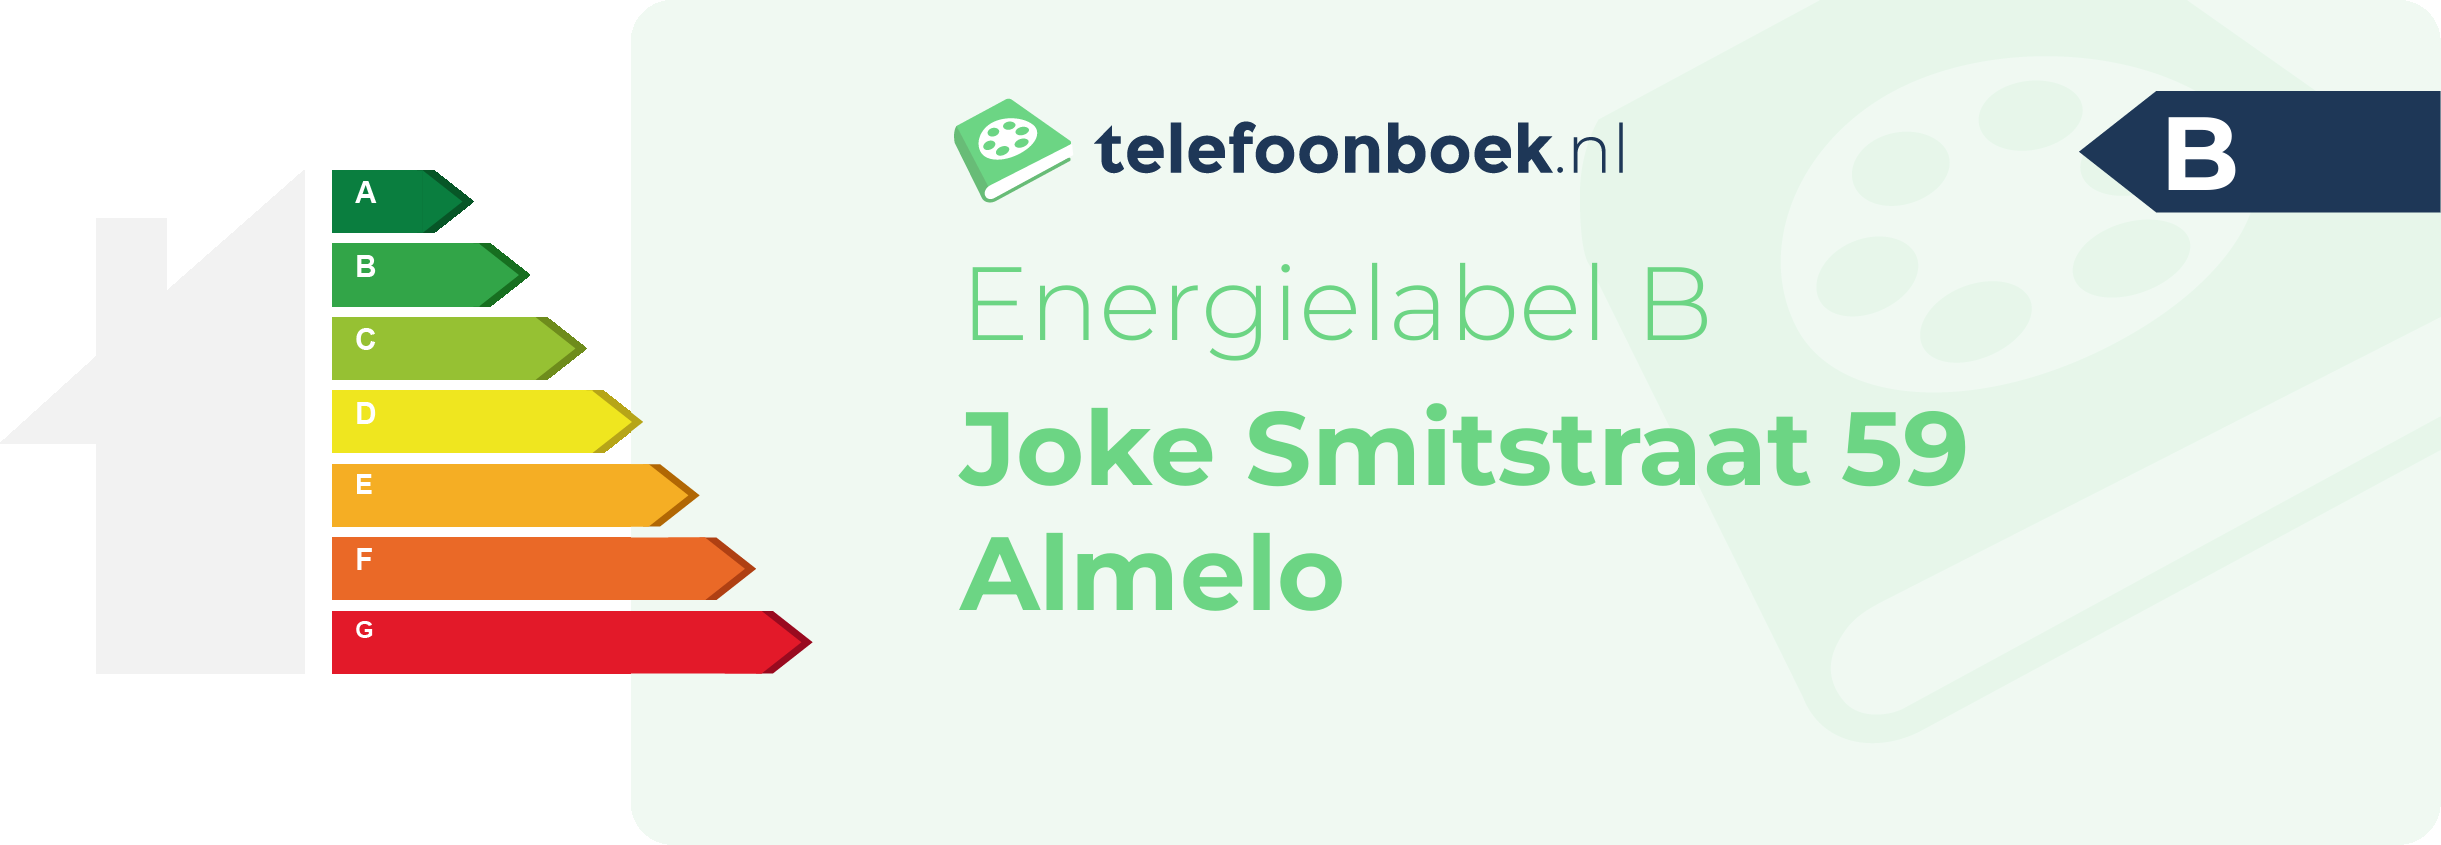 Energielabel Joke Smitstraat 59 Almelo